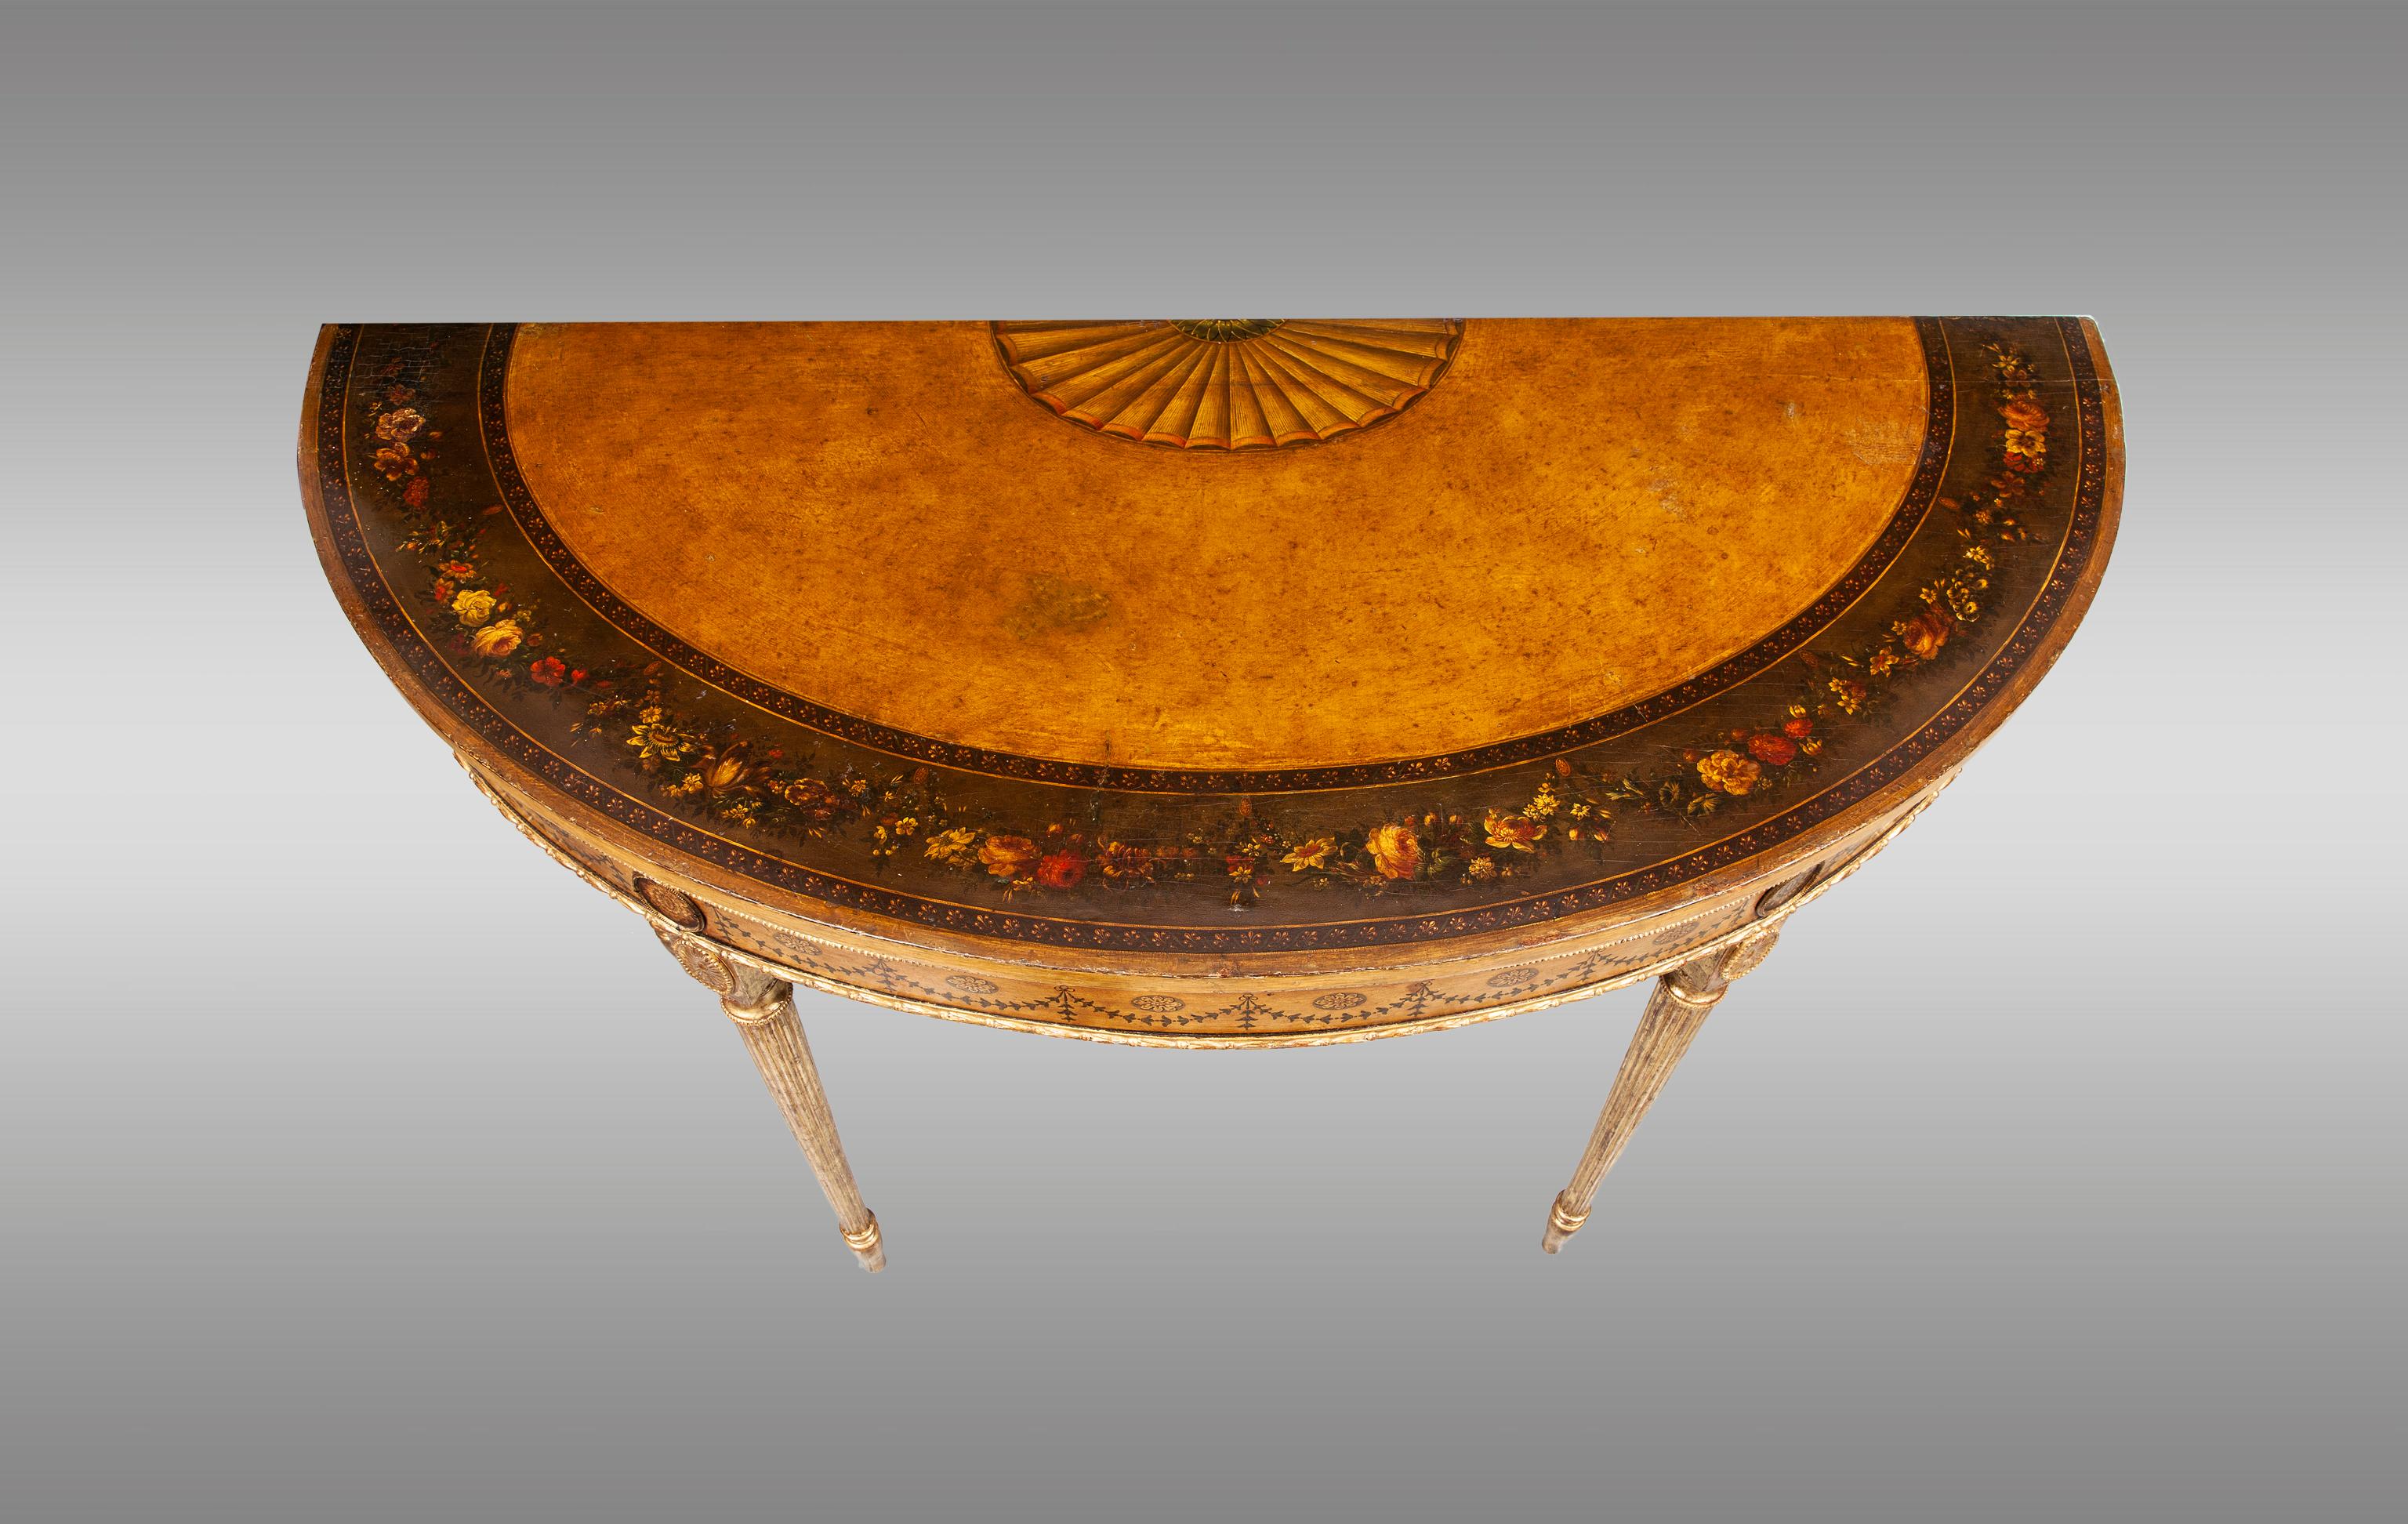 Füße aus goldenem Holz und bemalte Platte mit Blumenbordüre und klassischem Medaillon.